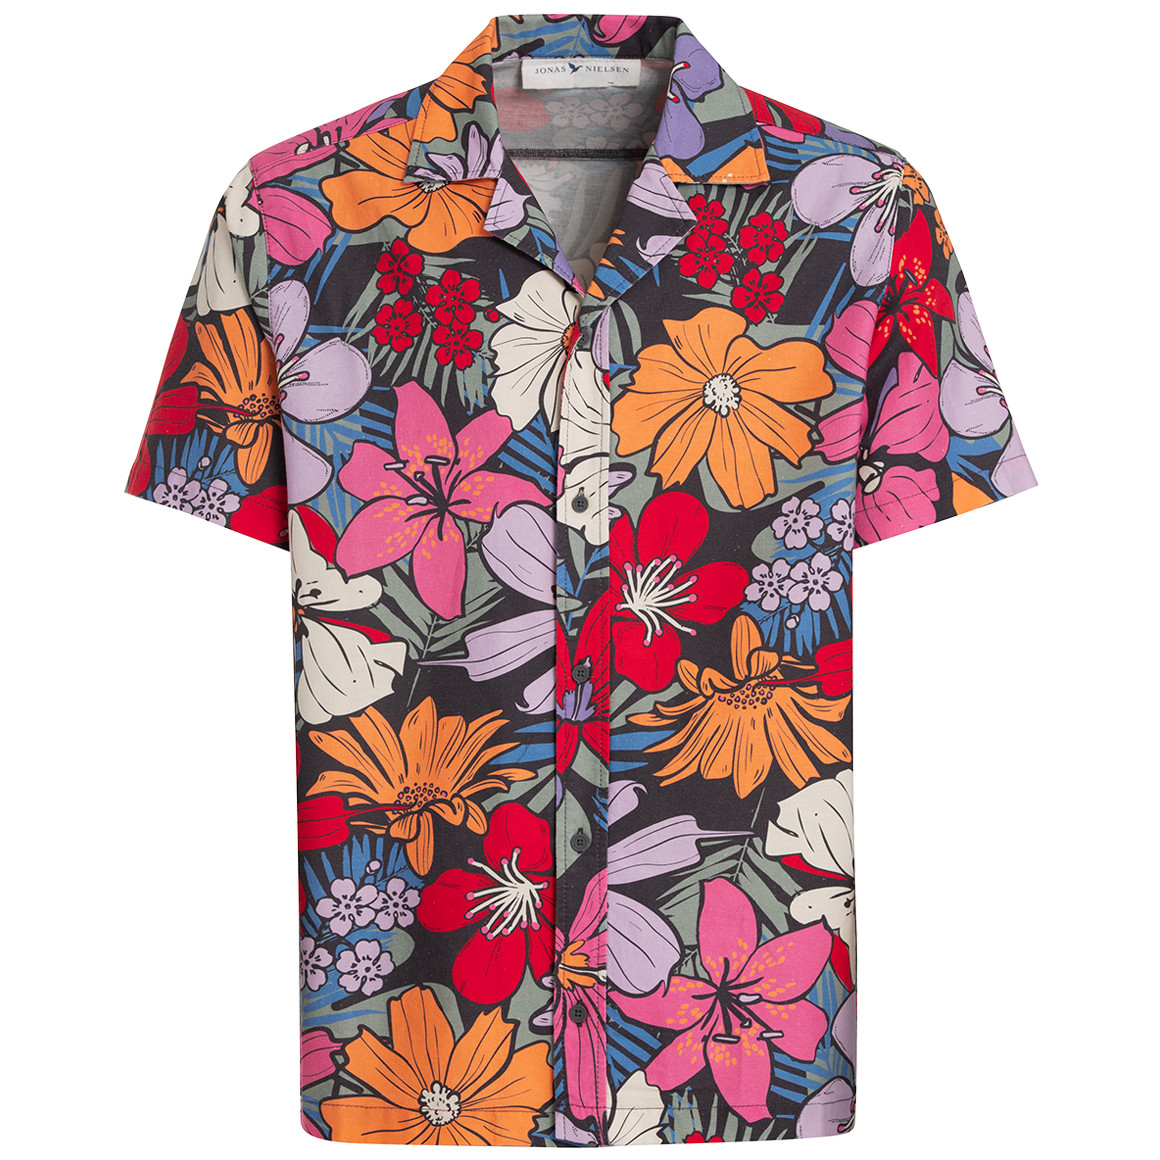 Herren Hawaiihemd mit Blumen-Dessin von VanVaan